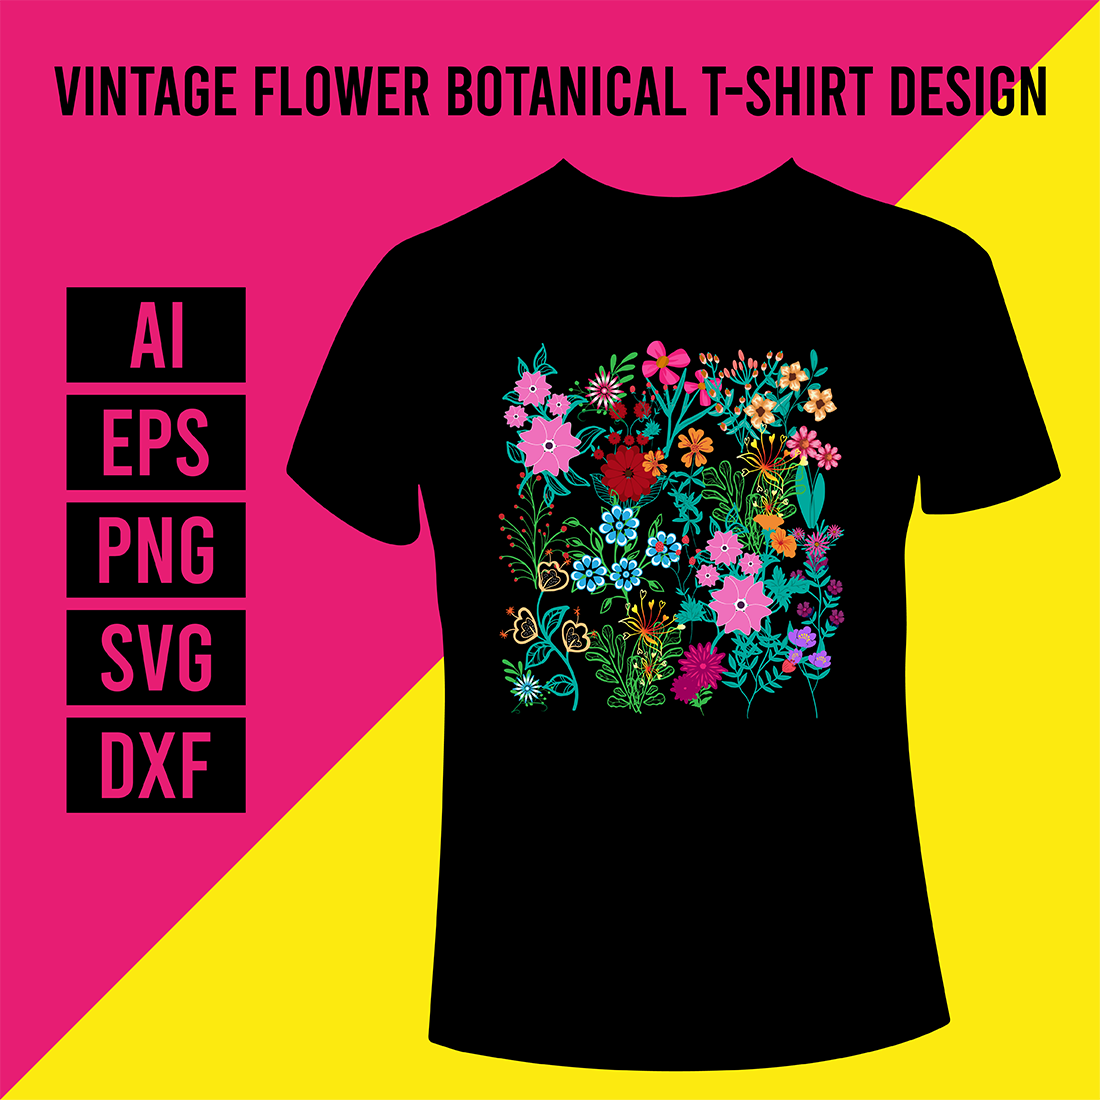 Vintage Flower Botanical T-Shirt Design cover image.